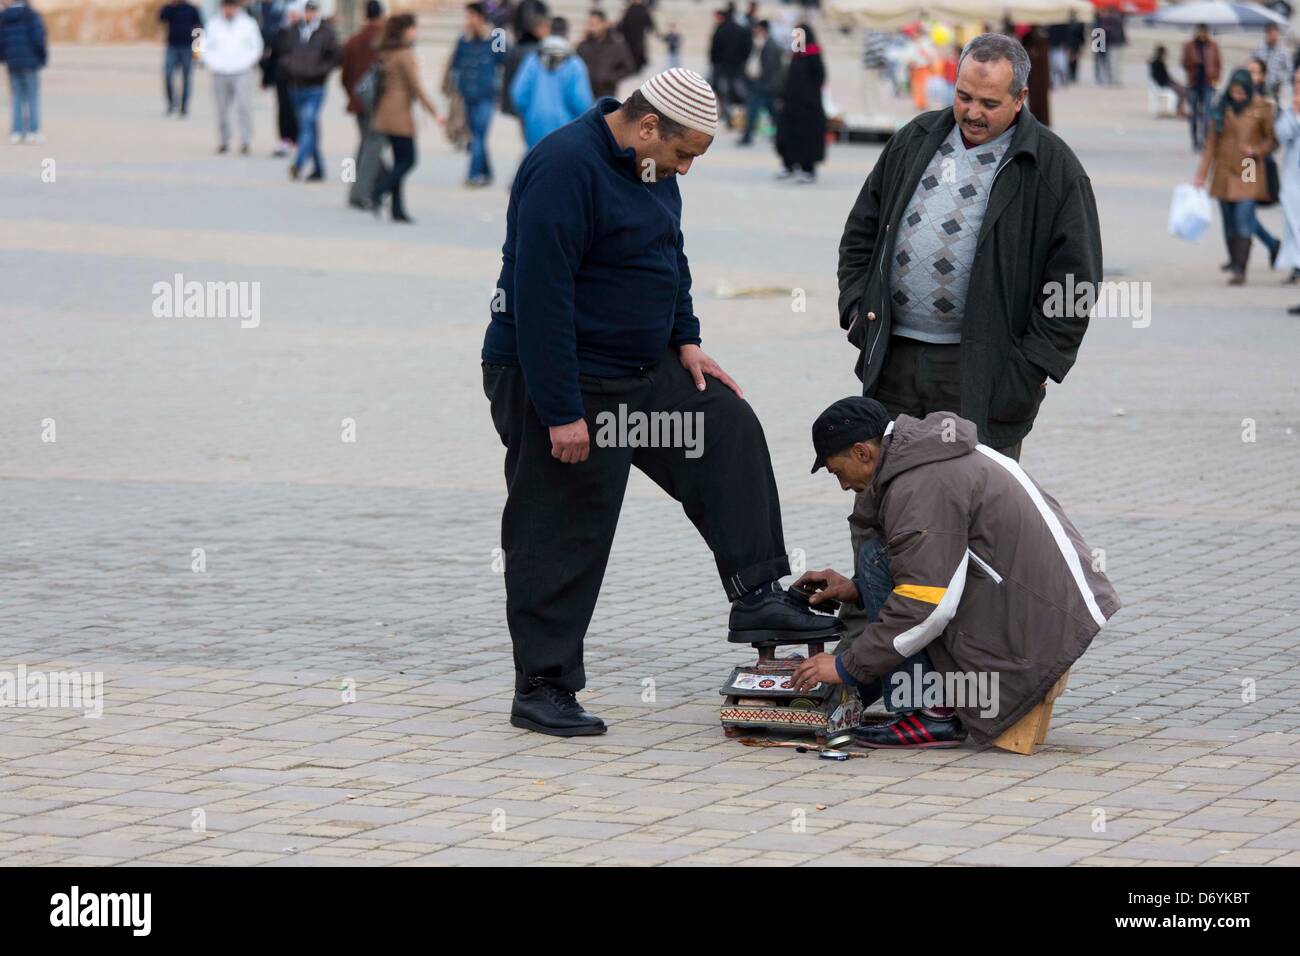 Schuhputzer bei der Arbeit auf dem Hauptplatz von Meknes, Marokko, Foto: Robert B. Fishman, ecomedia, 26.2.2013 Stock Photo